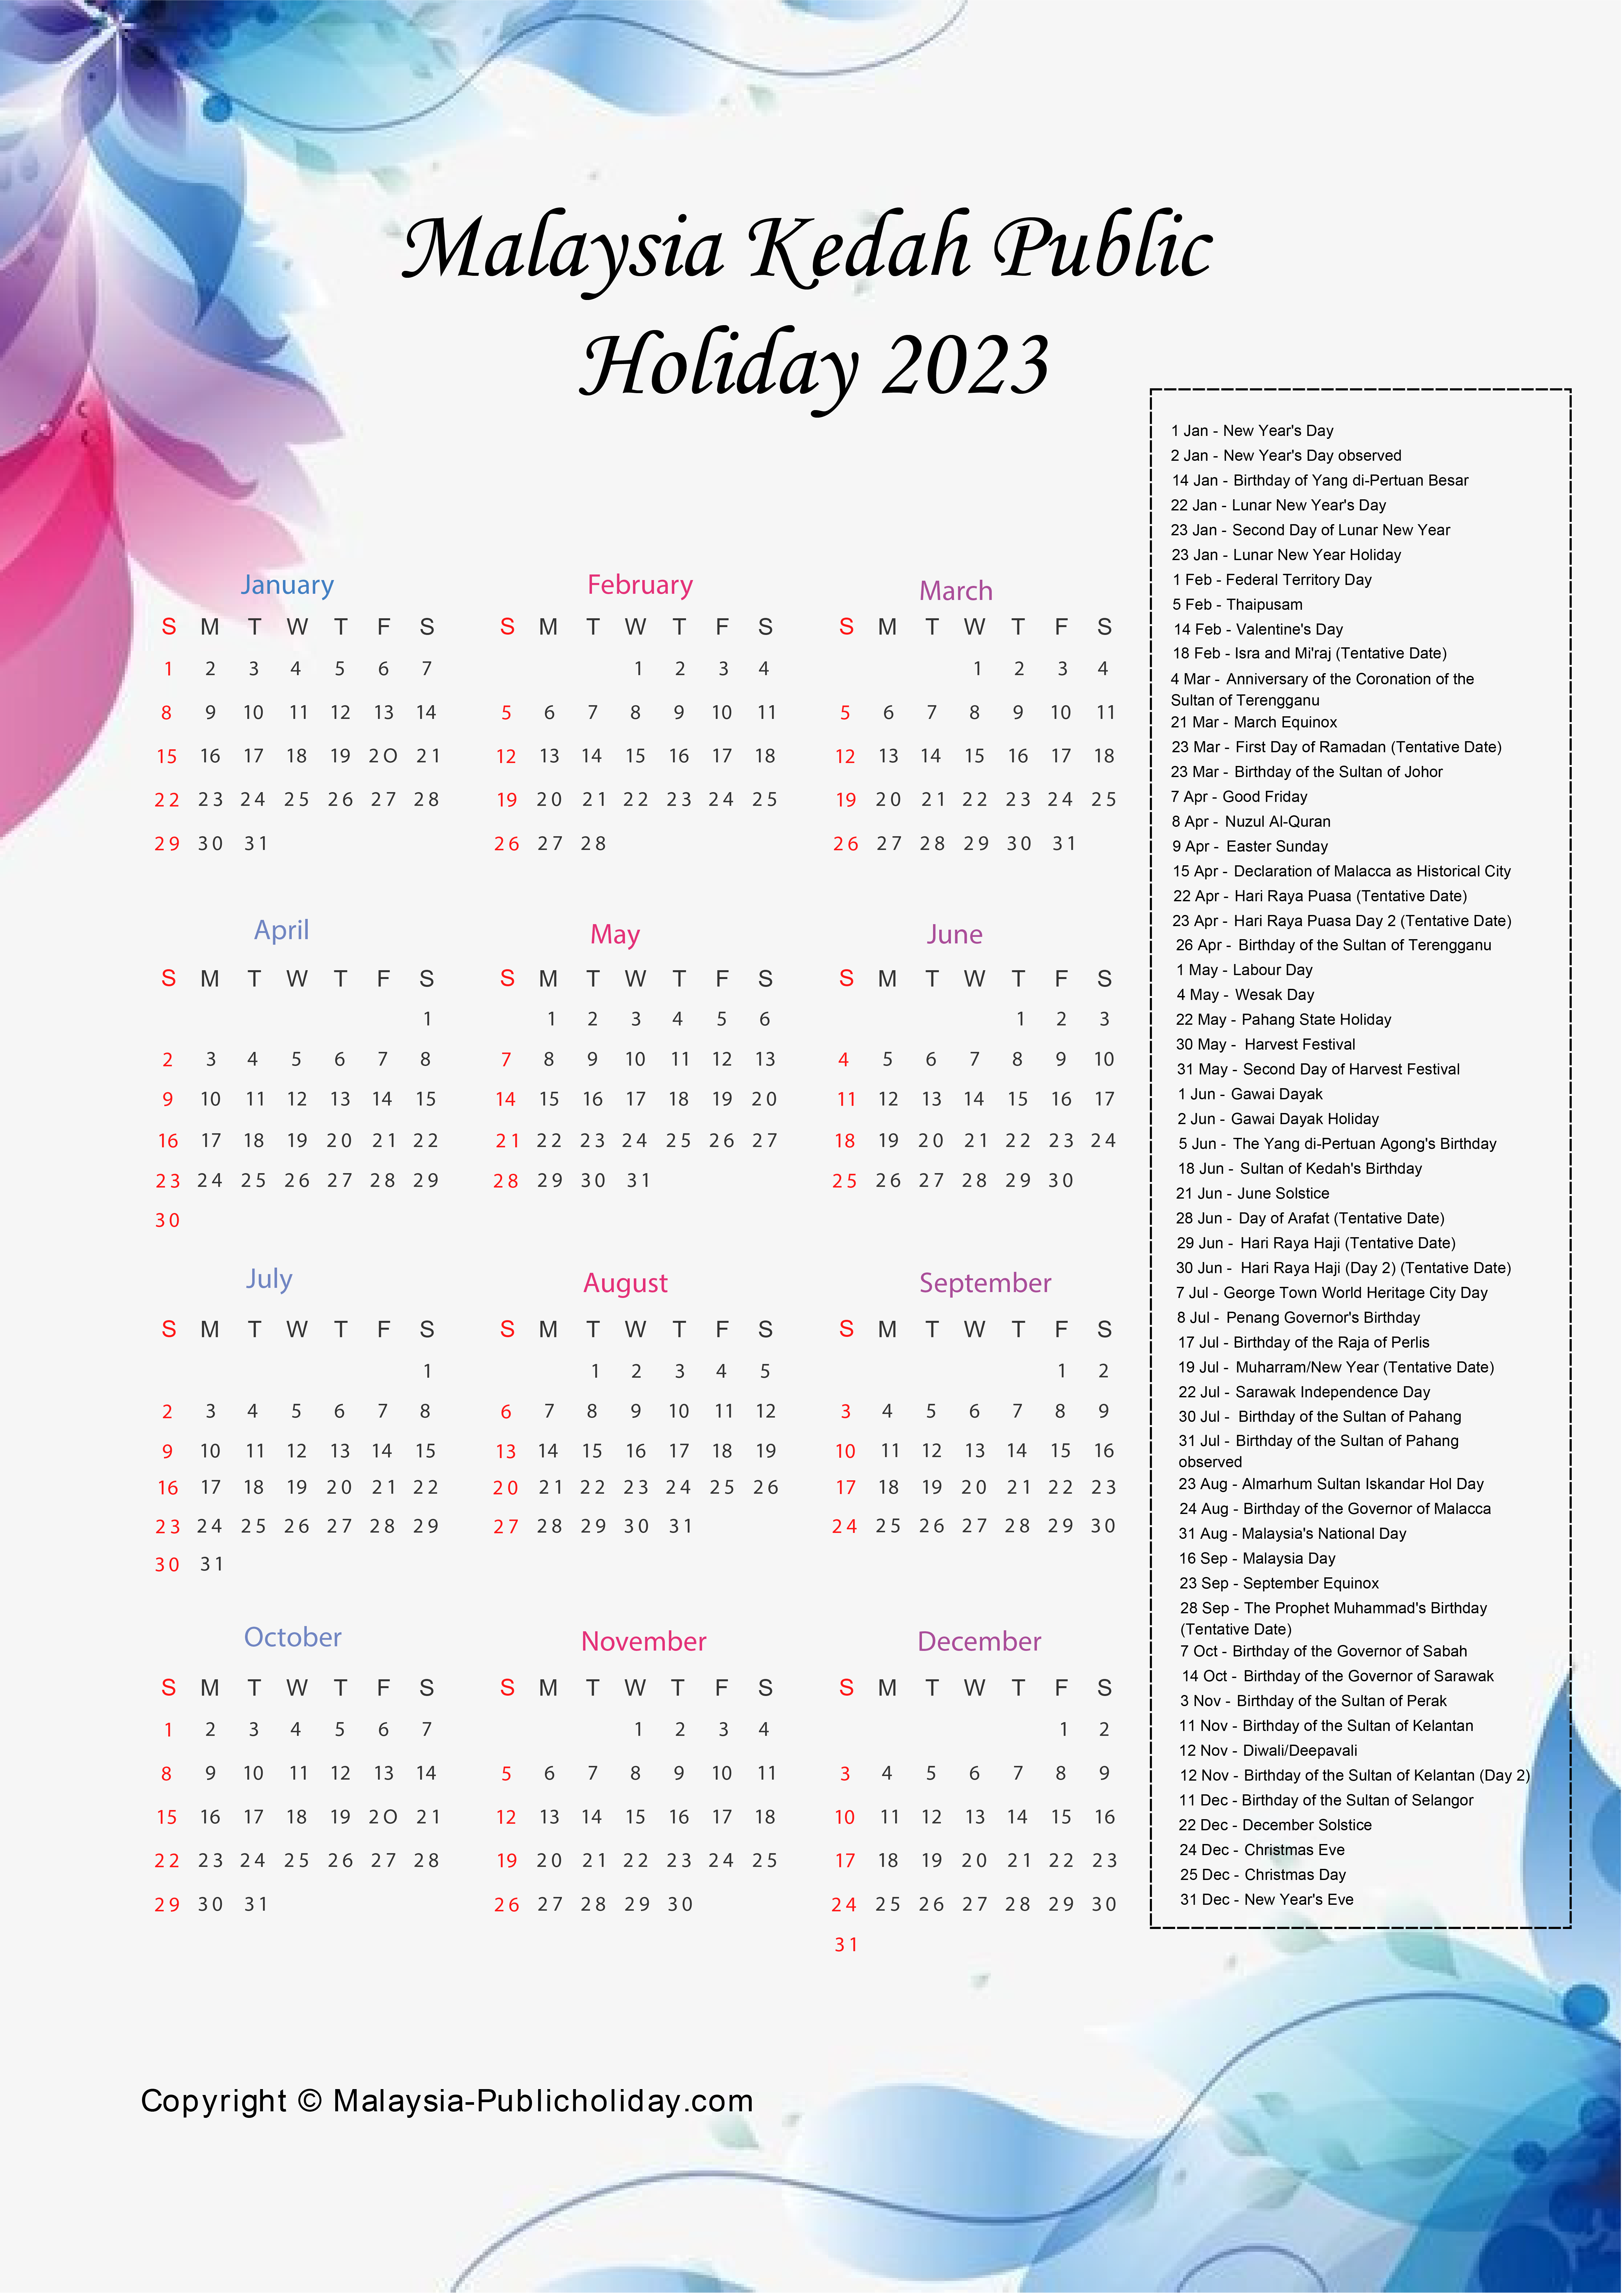 Kedah Calendars 2023 Malaysia